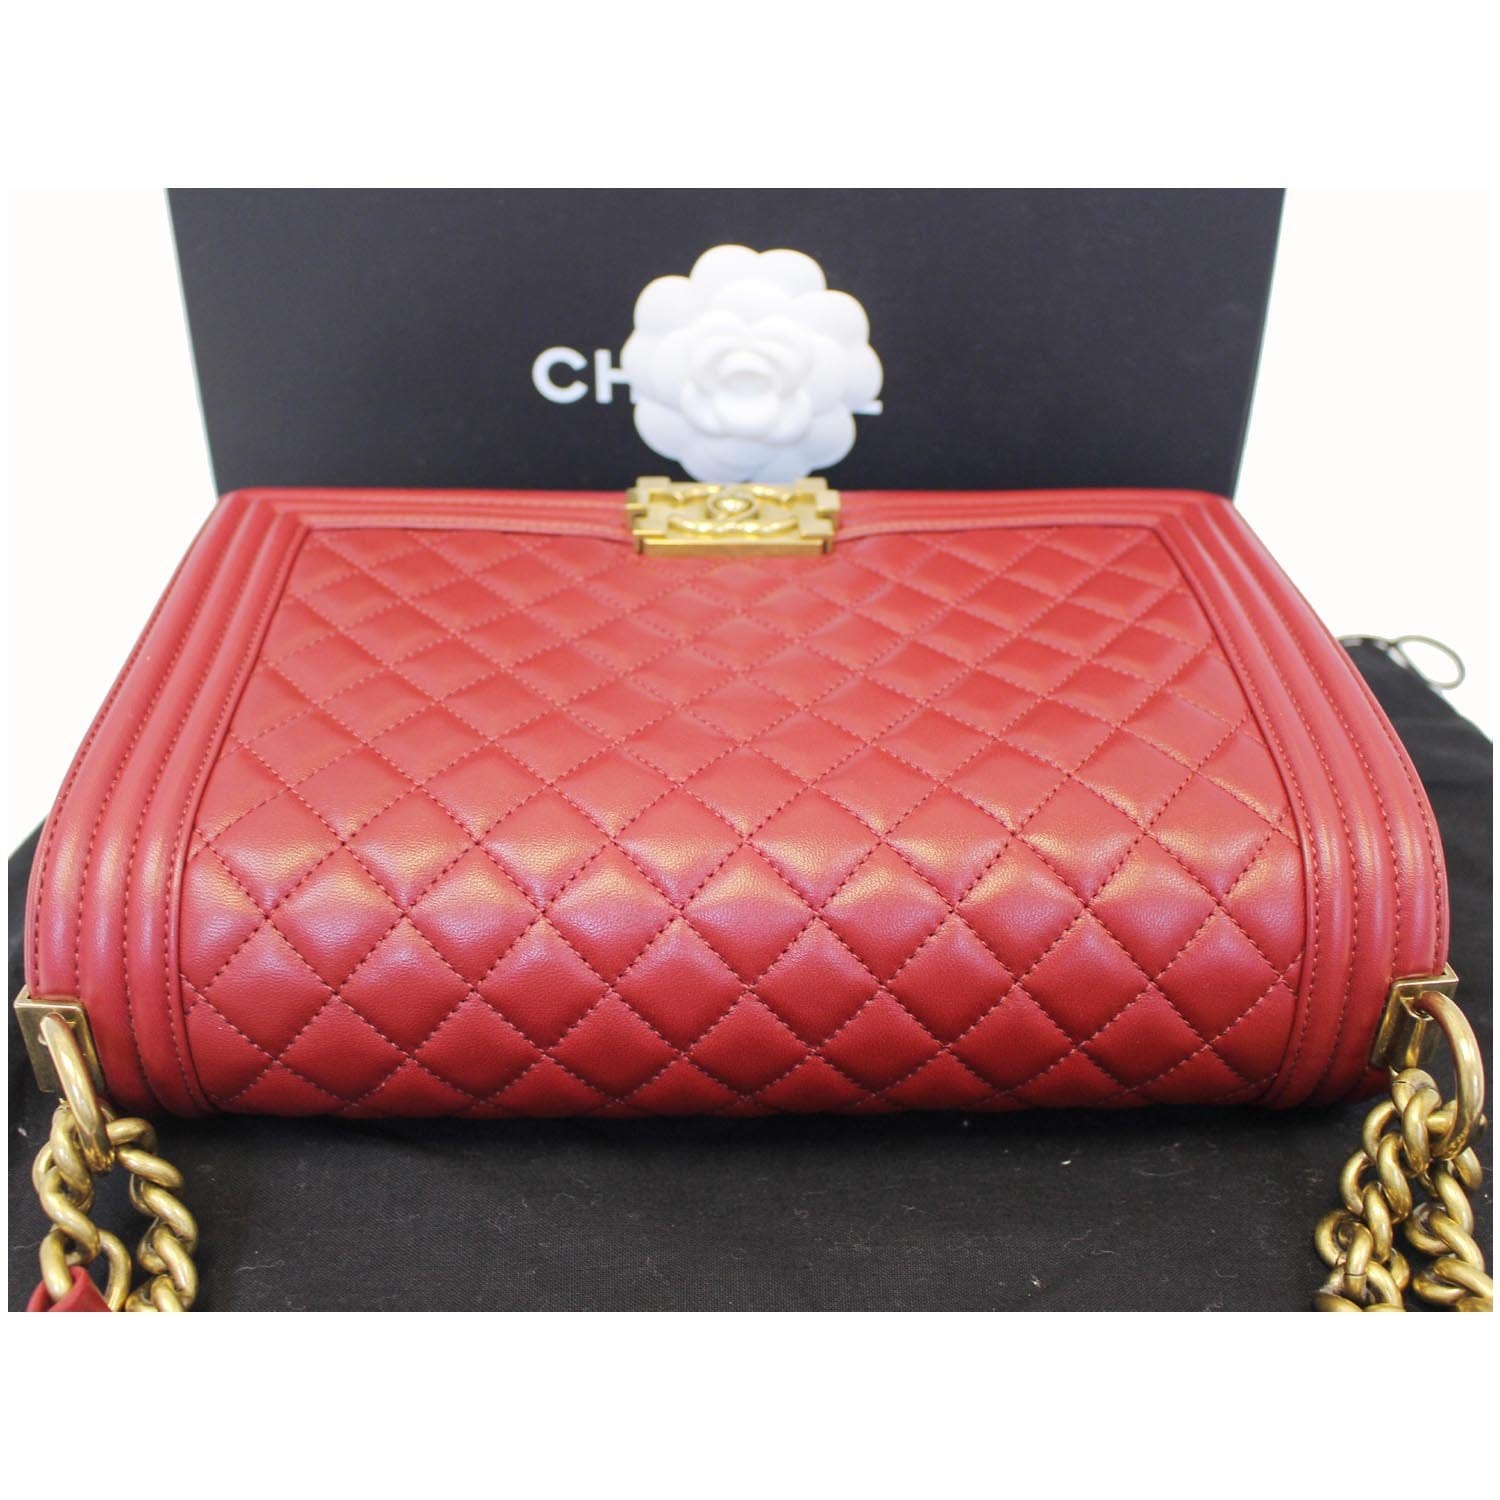 Authentic Chanel Red Leather Matelassé Chain Shoulder Bag